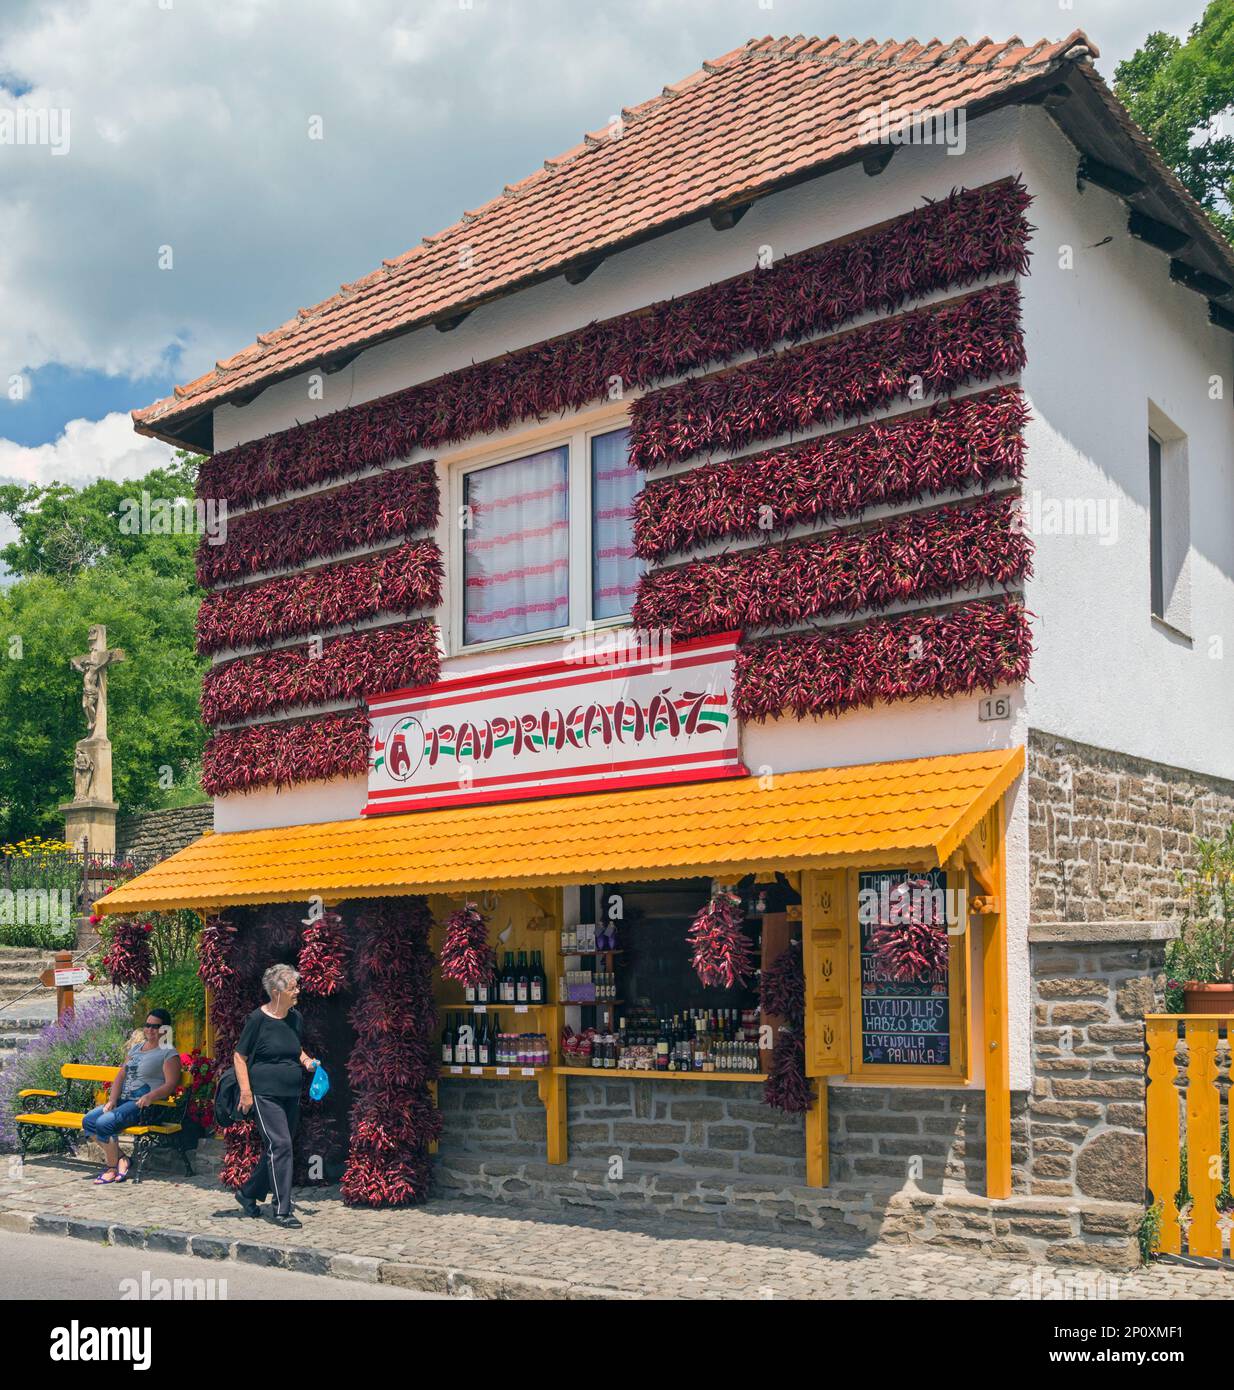 Tihany Dorf, am Ufer des Balaton, Tihany Halbinsel, Ungarn. Shop, der sich auf den Verkauf von Paprika und Paprika spezialisiert hat. Stockfoto